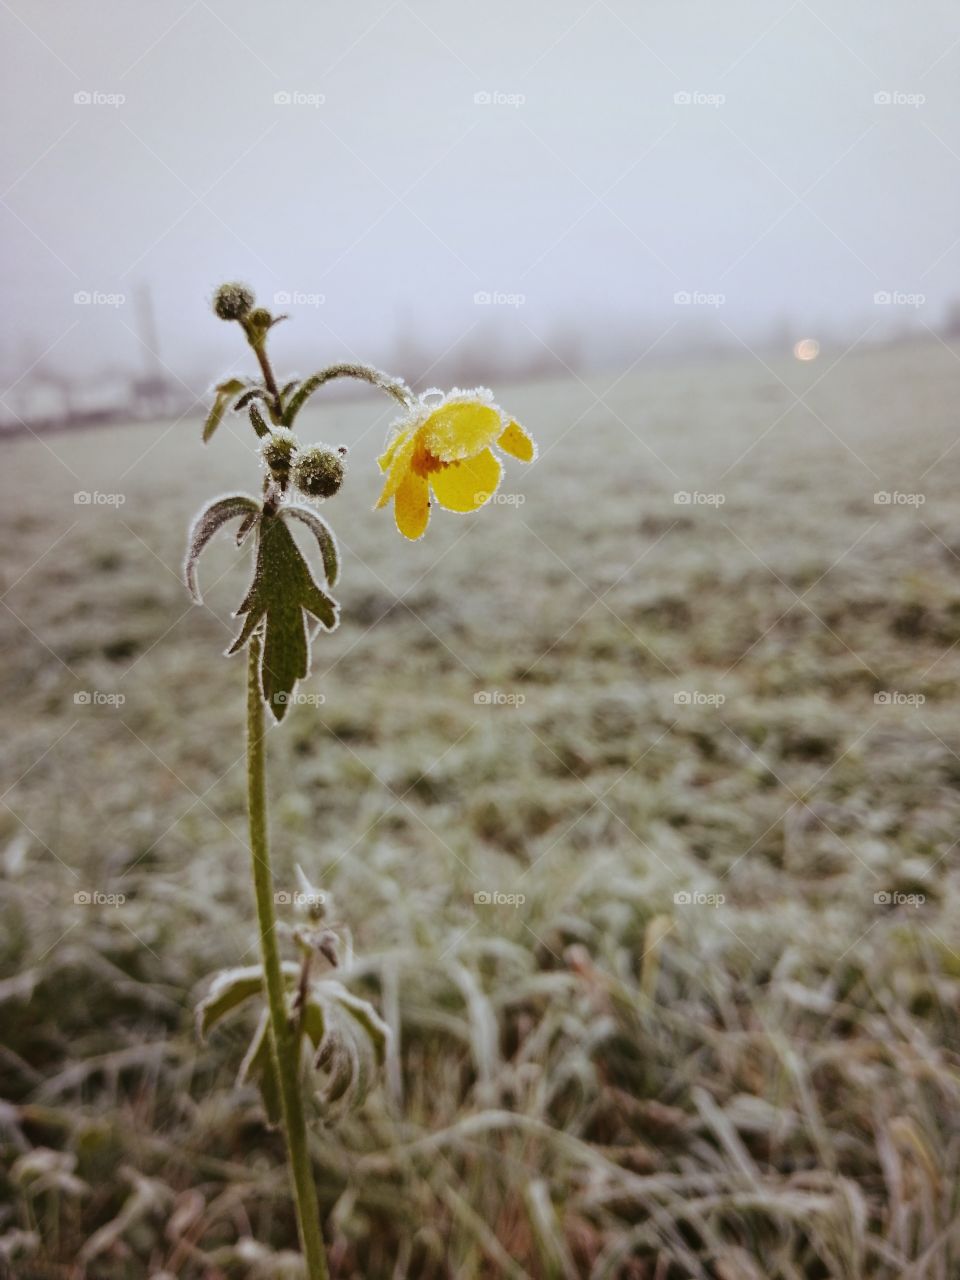 Frozen flower in the field. Negative space.